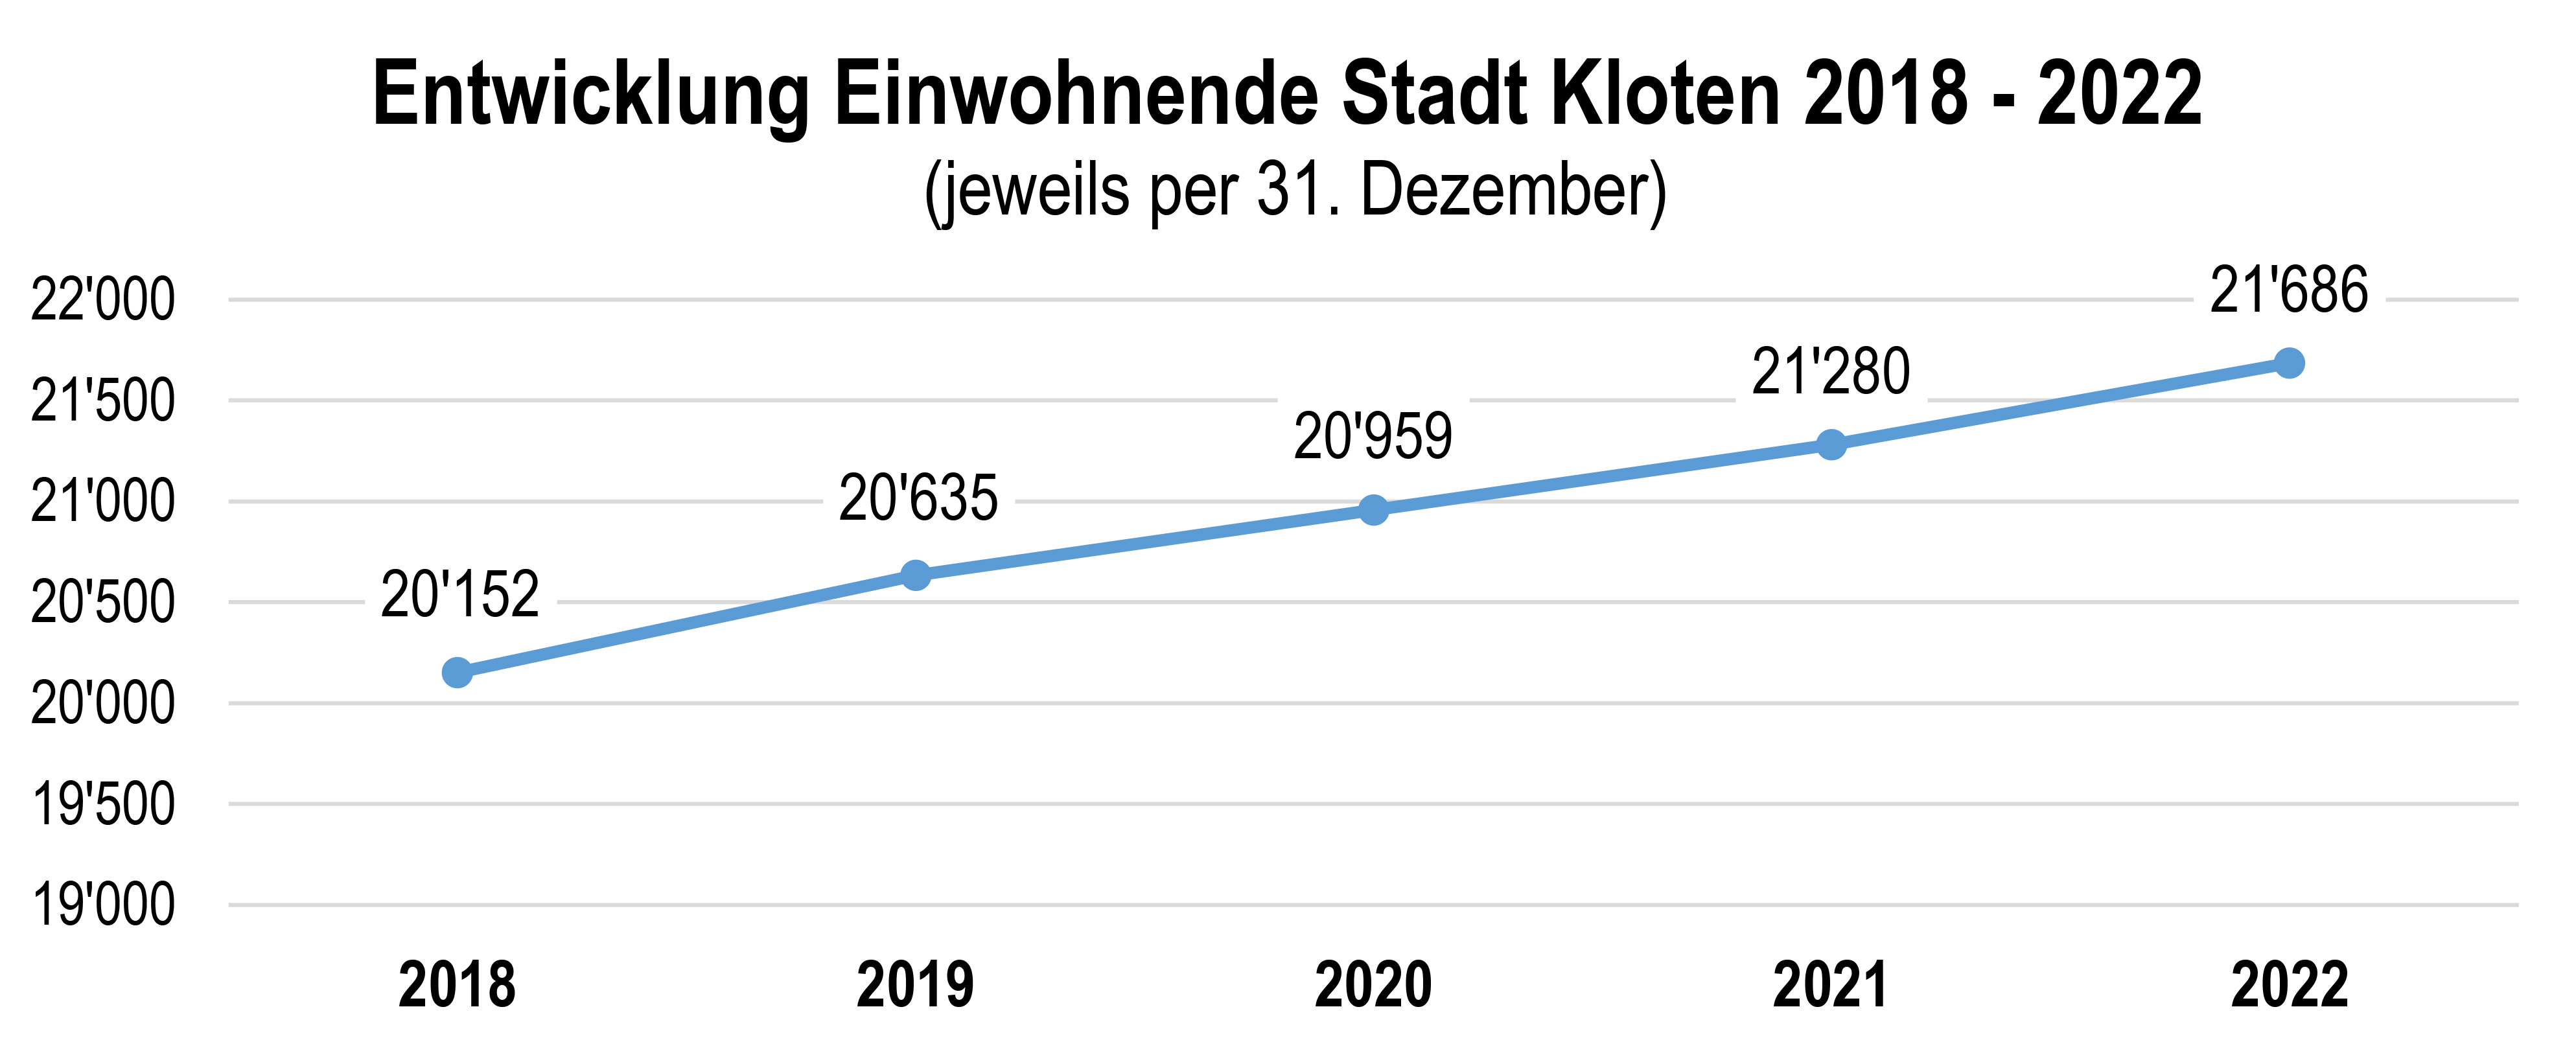 Entwicklung Einwohnende Stadt Kloten 2018 - 2022